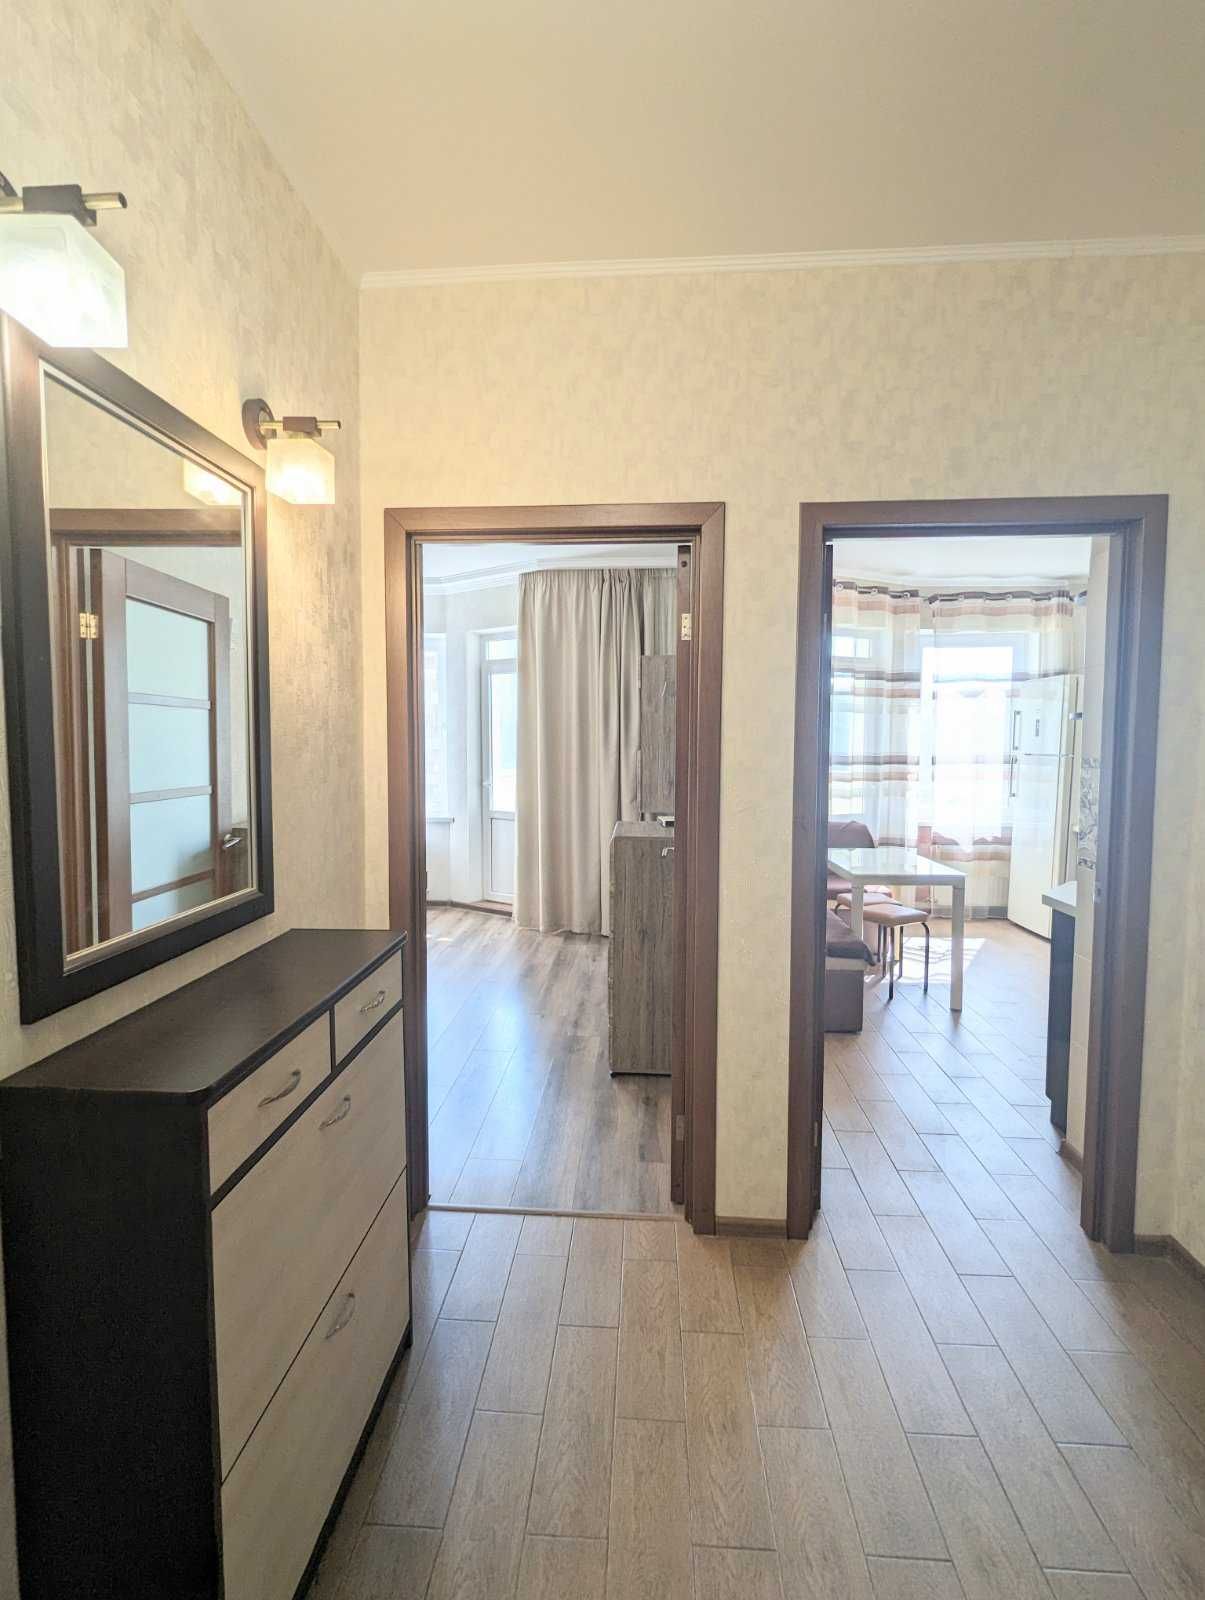 Однокомнатная квартира в ЖК Радужный, первый дом от Жукова.